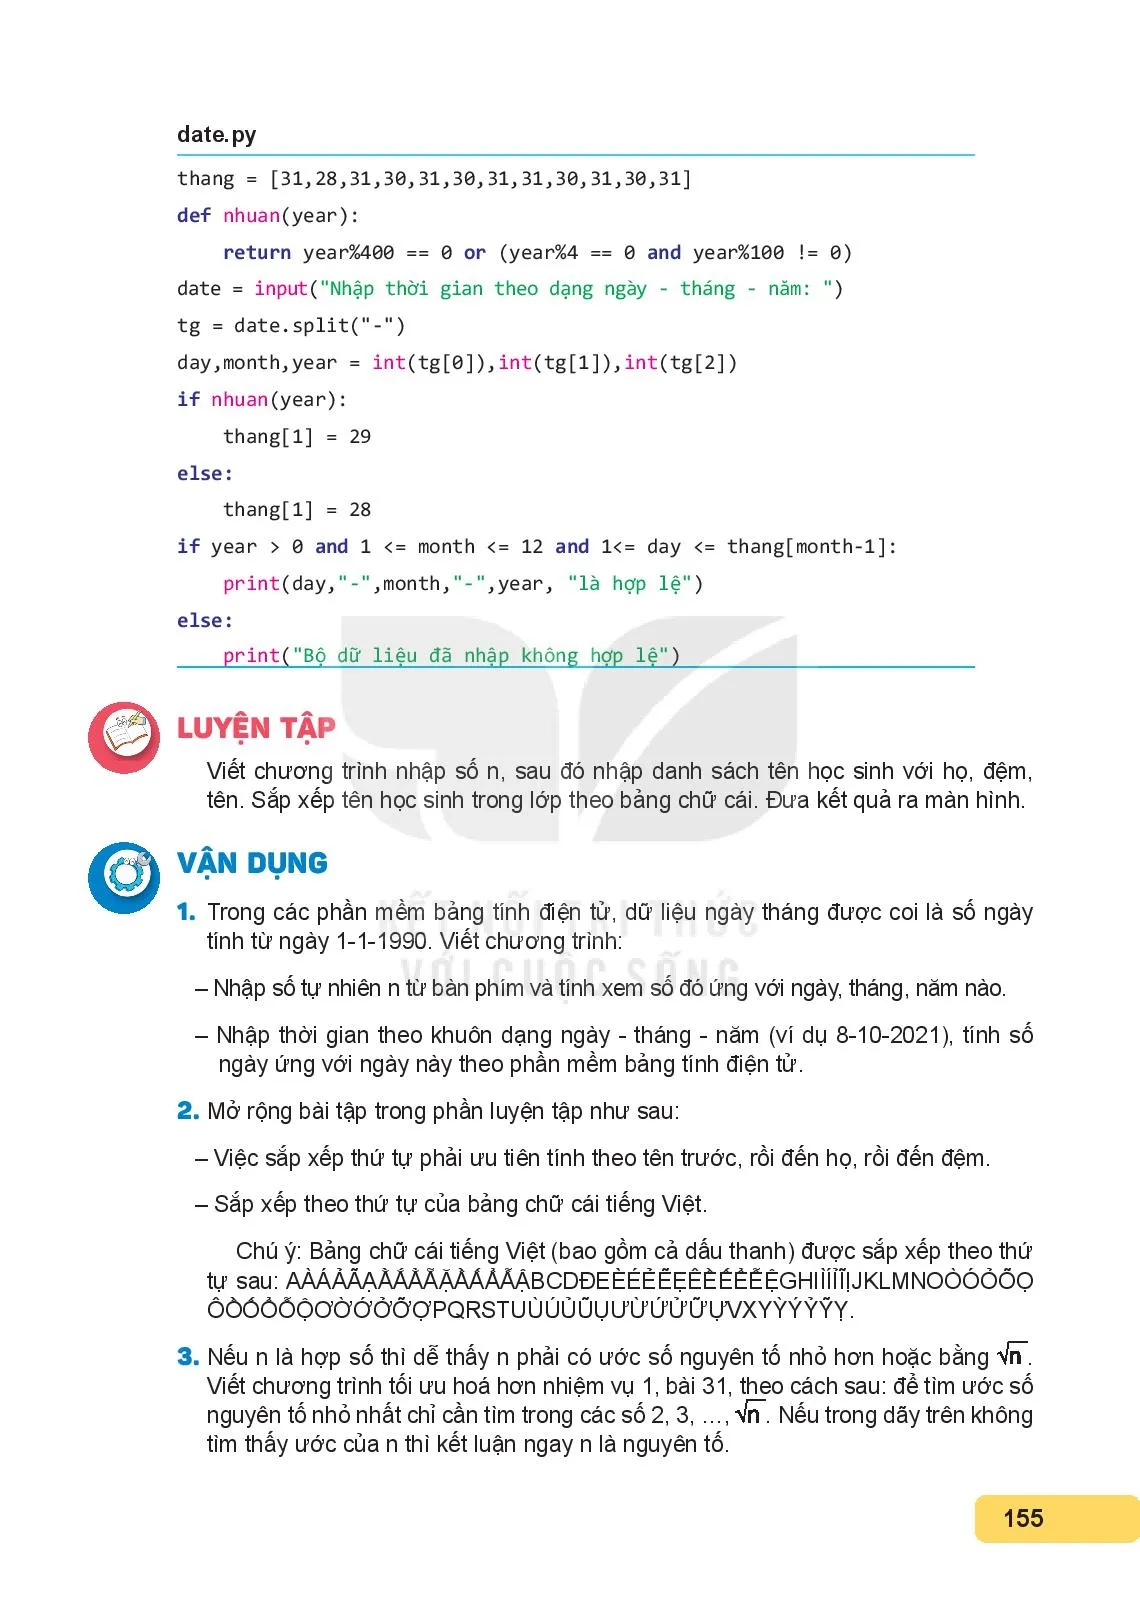 Bài 32. Ôn tập lập trình Python